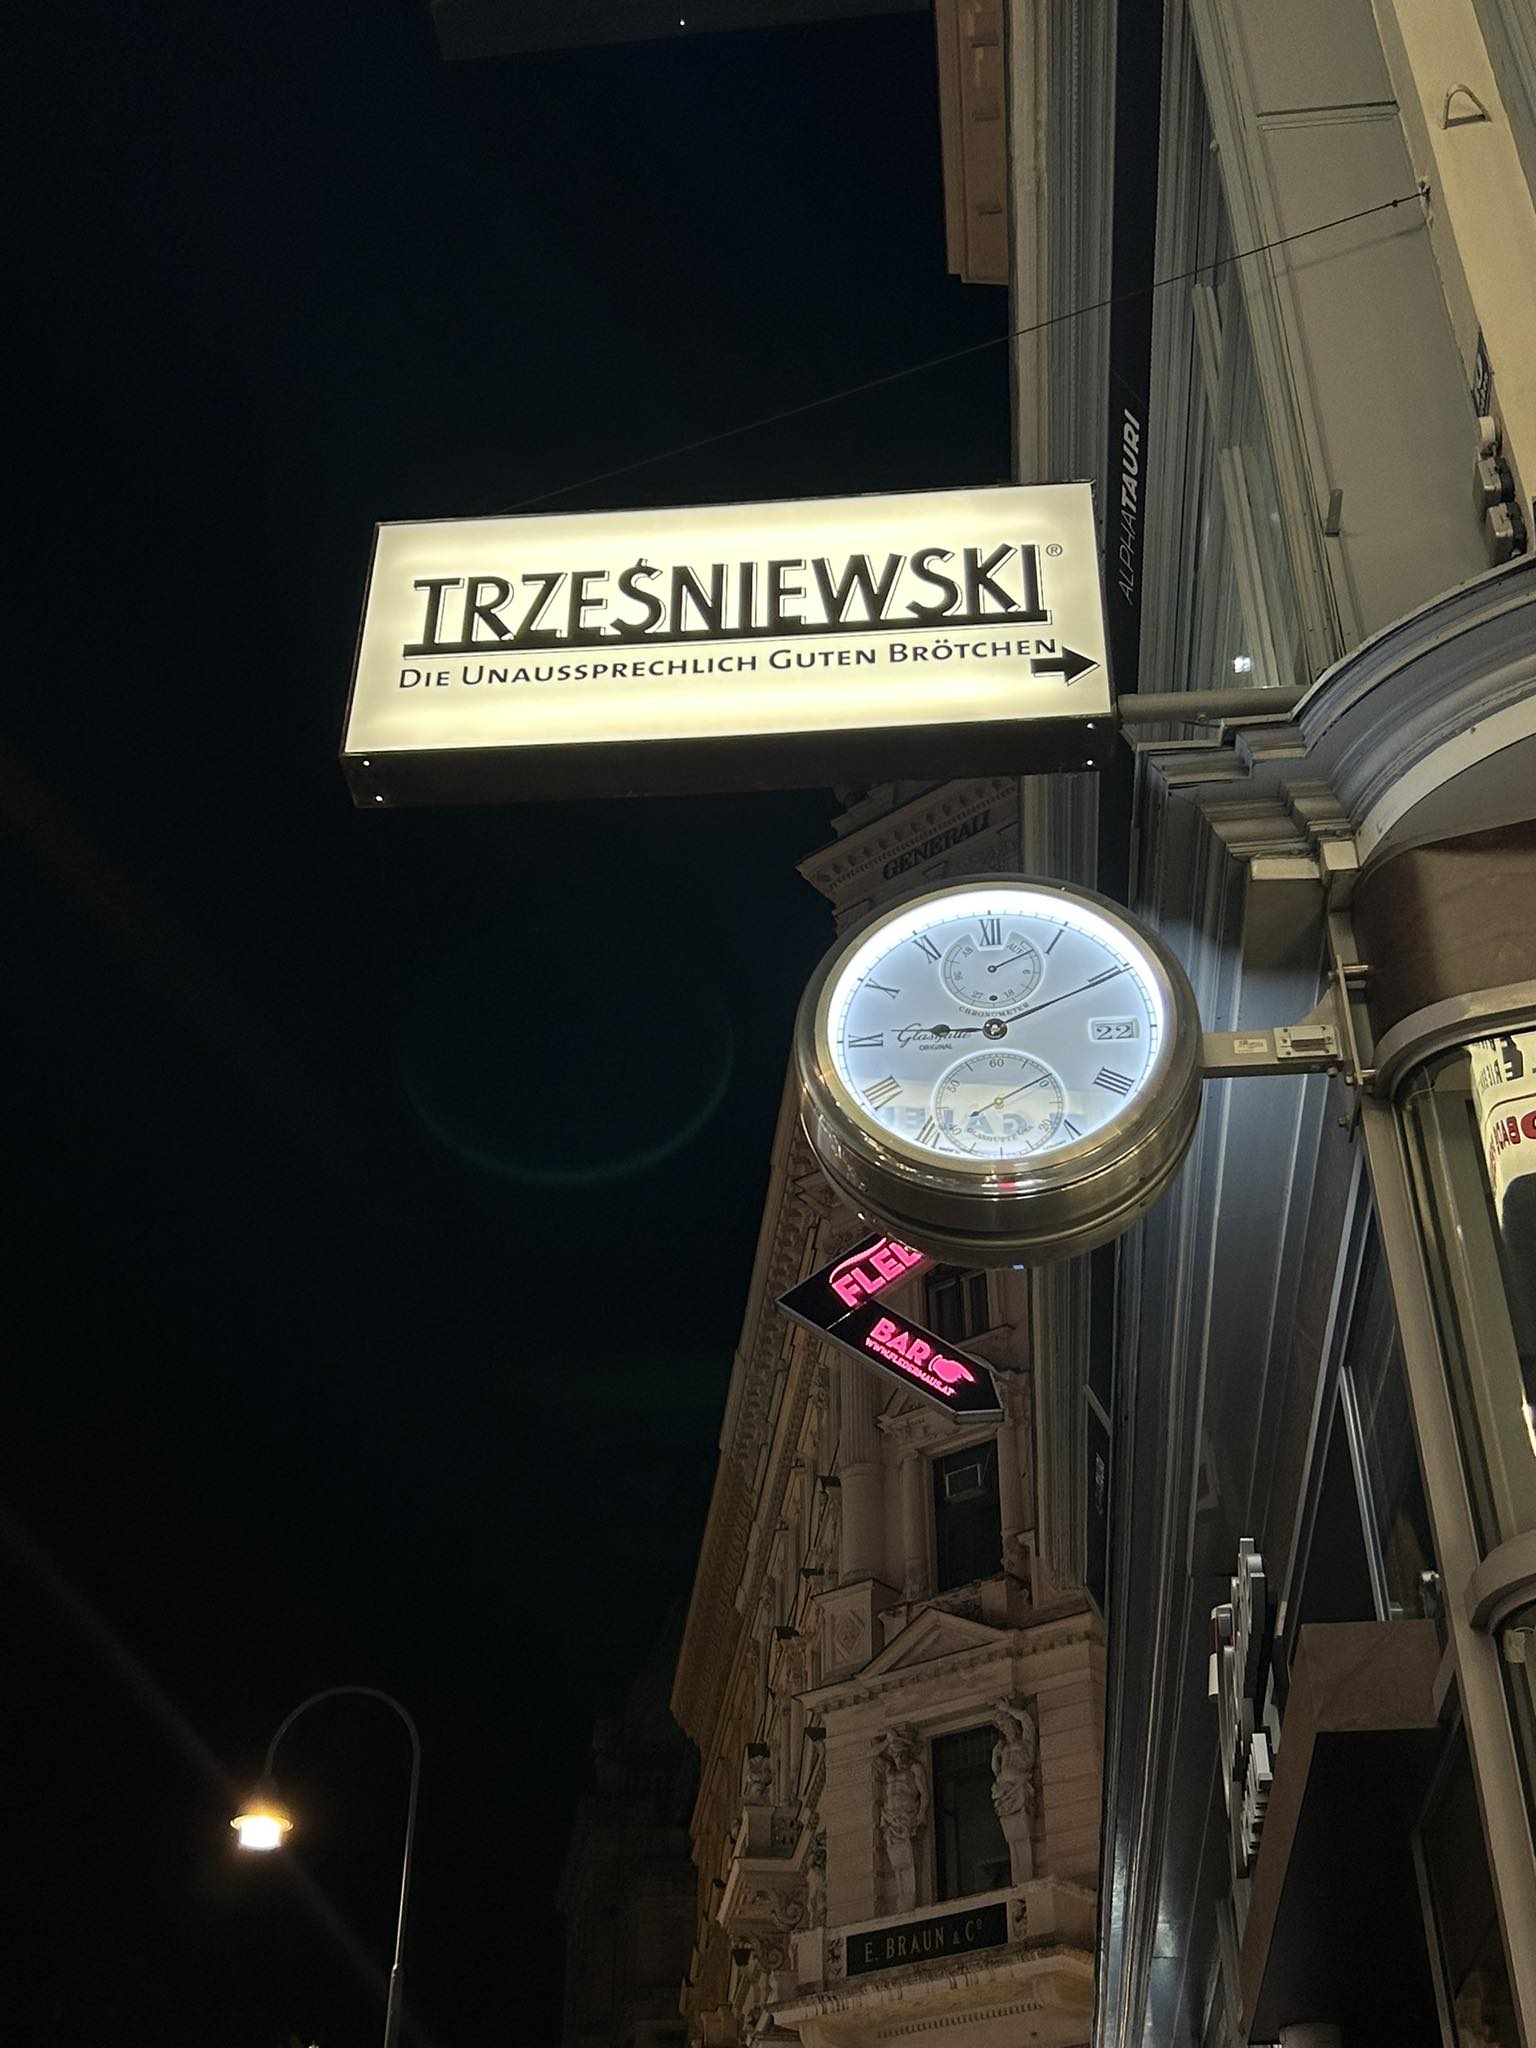 Trześniewski - sandwich bar chain